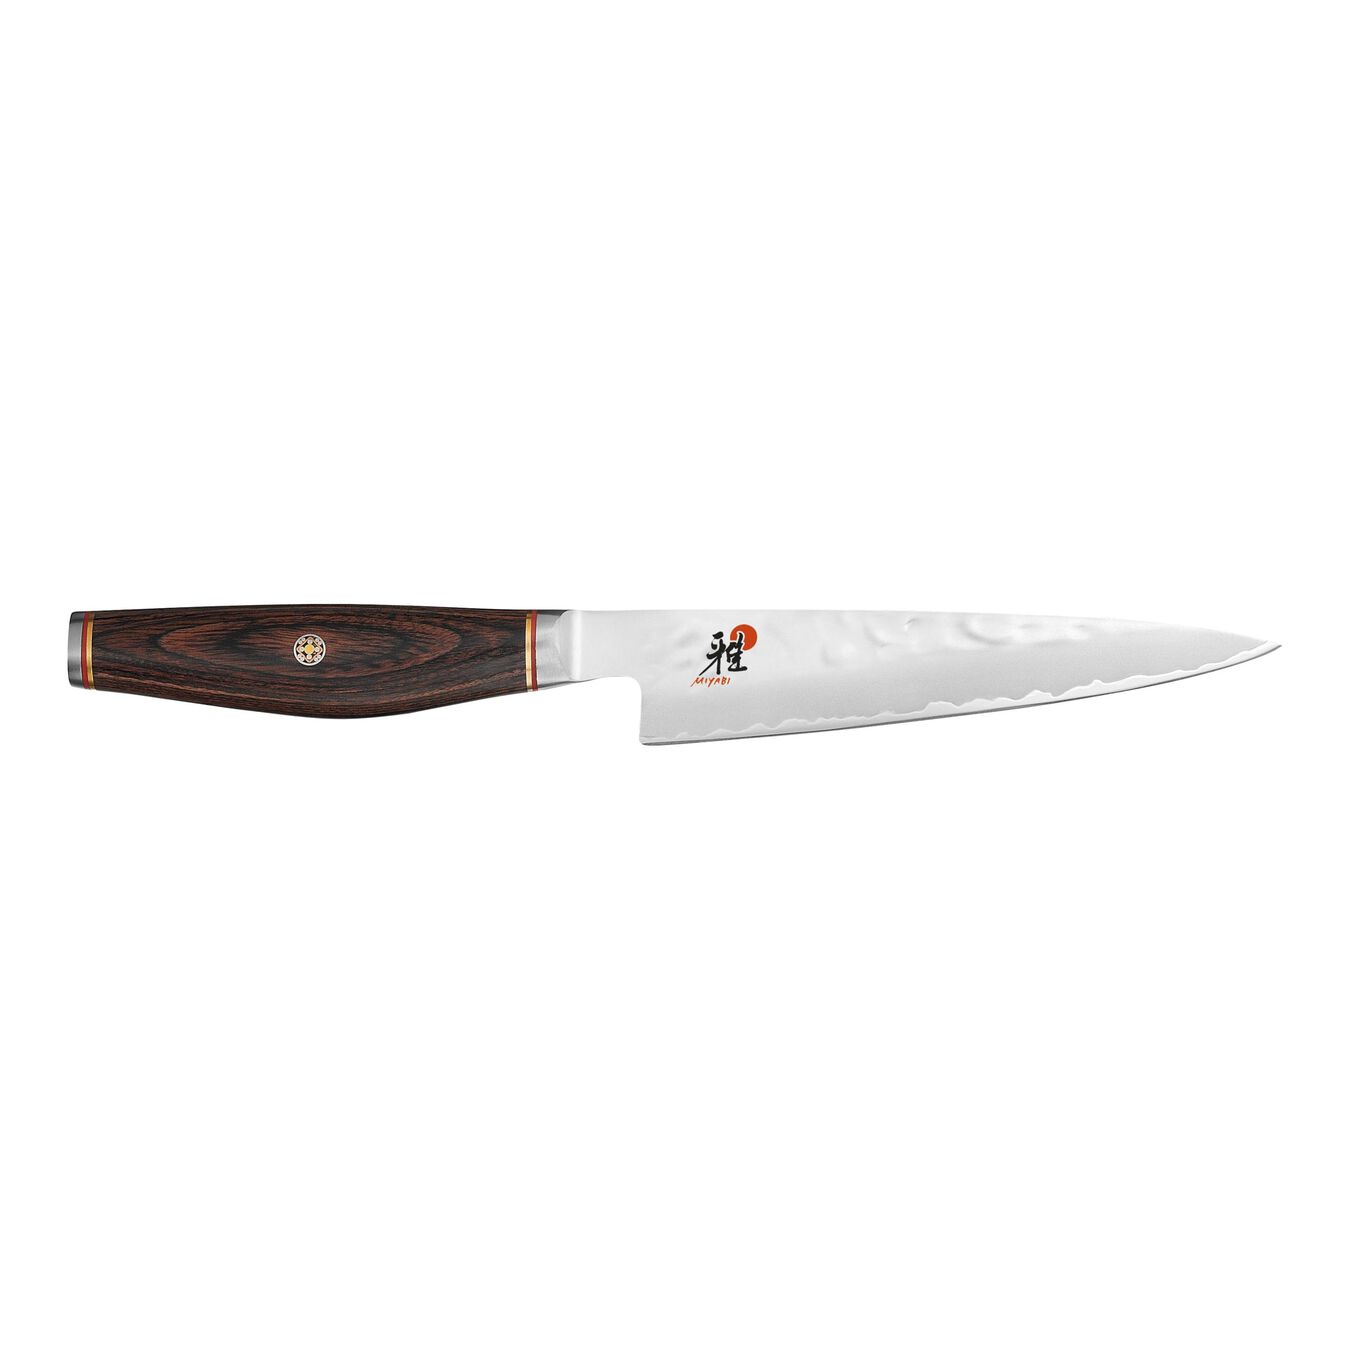 5-inch Pakka Wood Utility Knife,,large 1